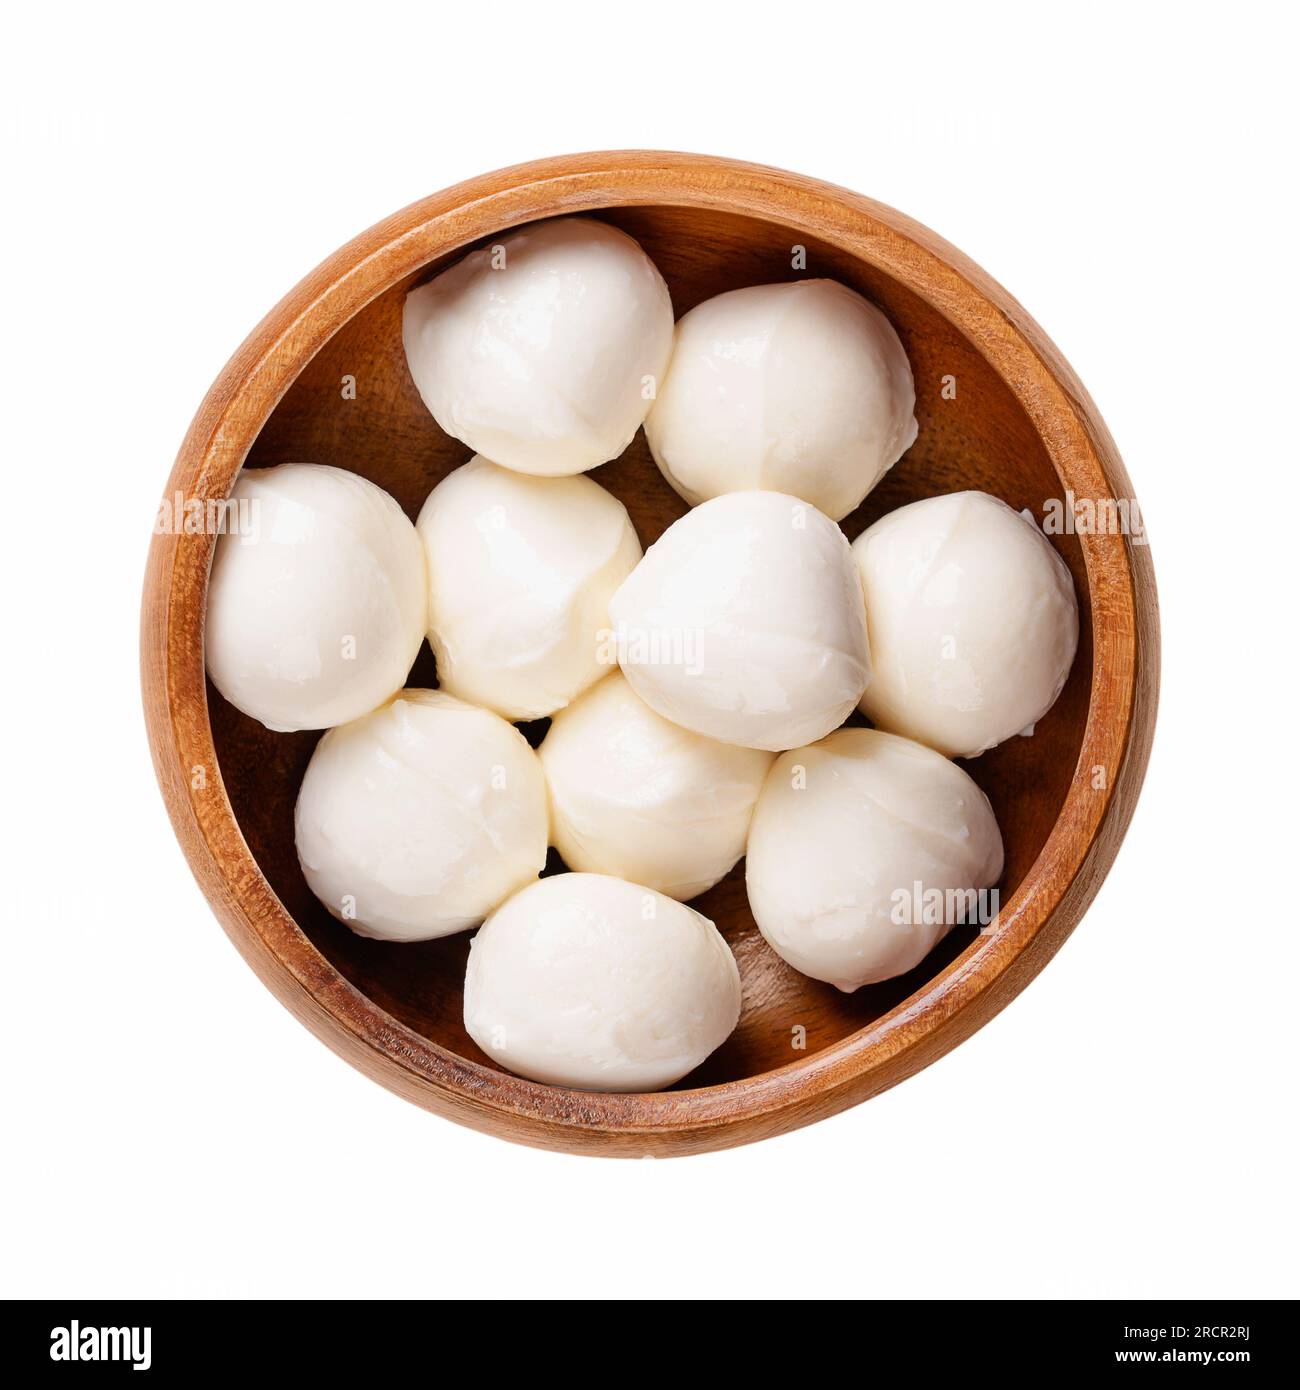 Mini palle di mozzarella, in una ciotola di legno. Formaggio bianco fresco dell'Italia meridionale a base di latte con il metodo della pasta filata, detto anche bambini bocconcini. Foto Stock